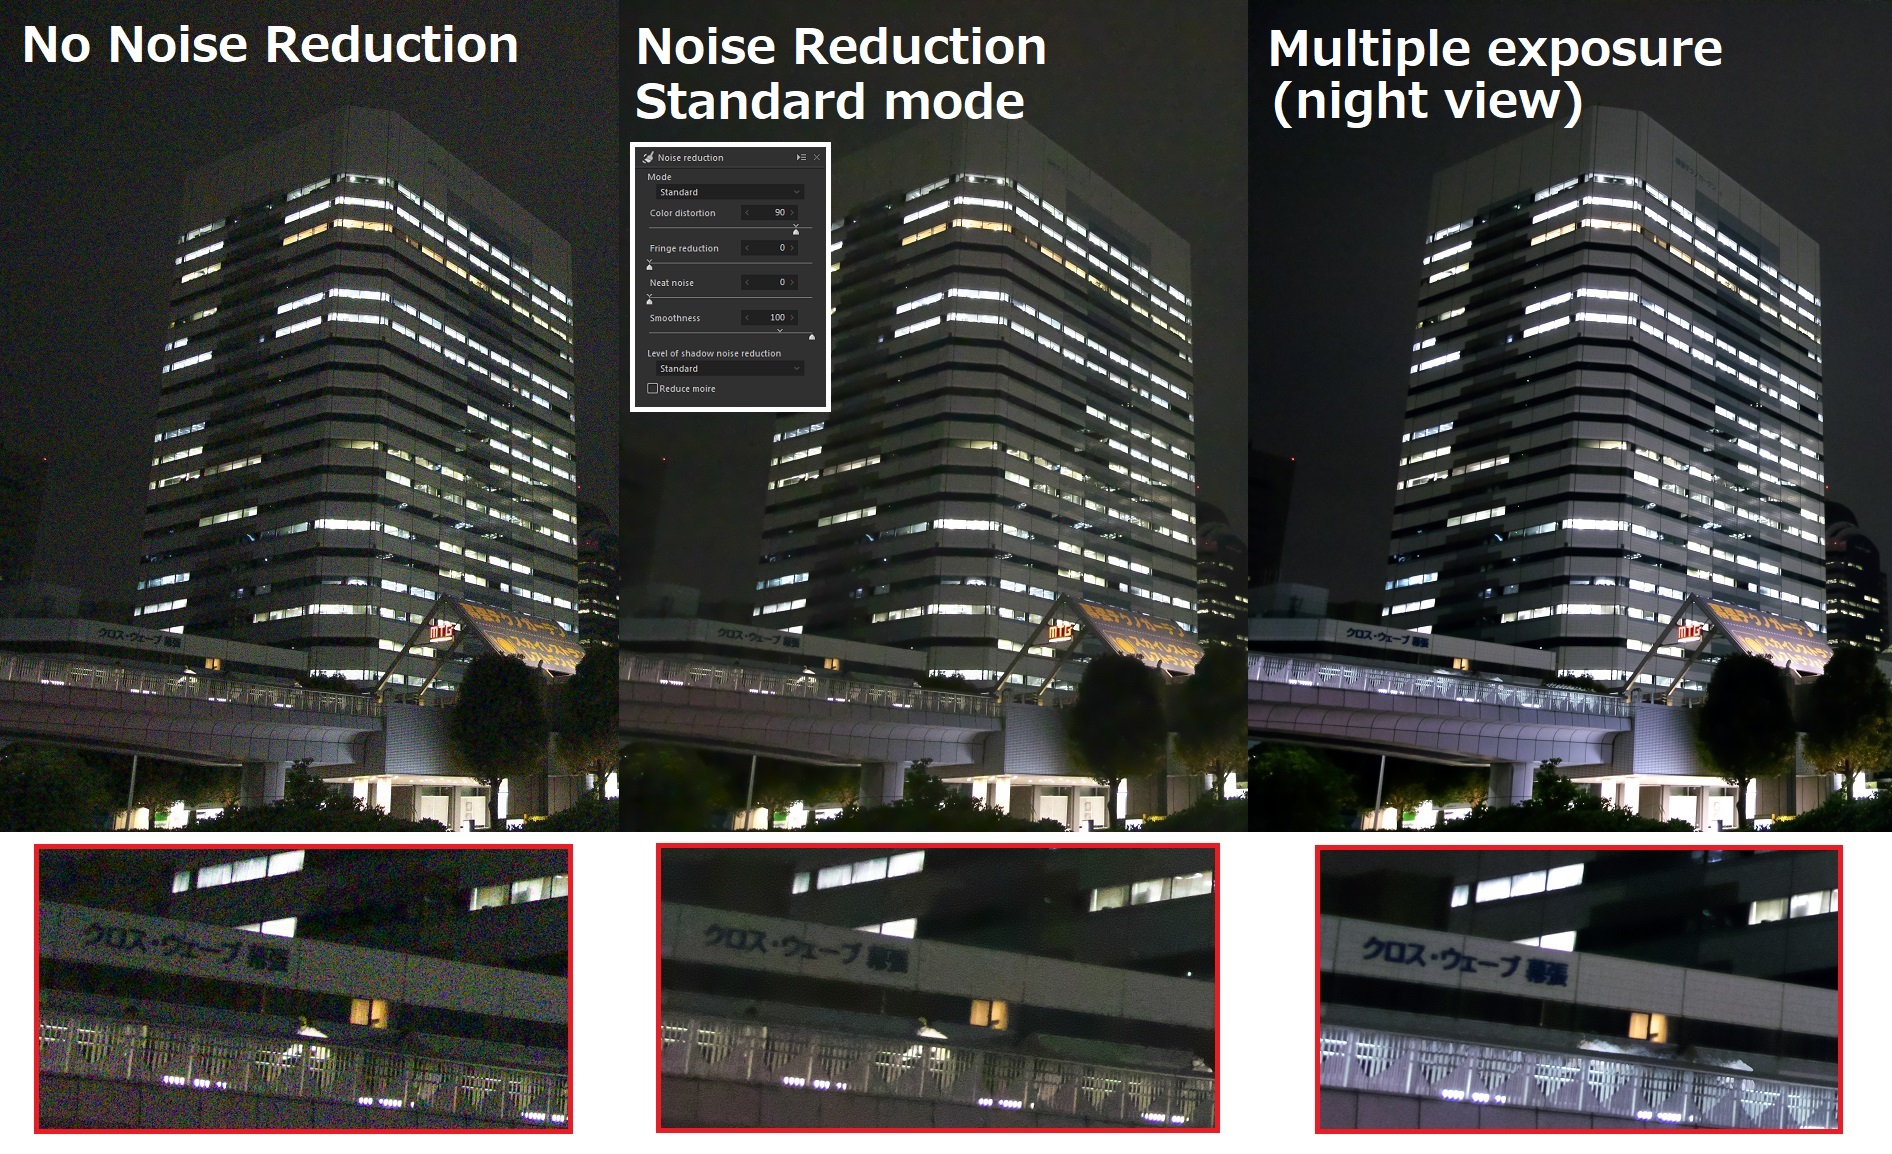 Multiple exposure (night view) composite 10